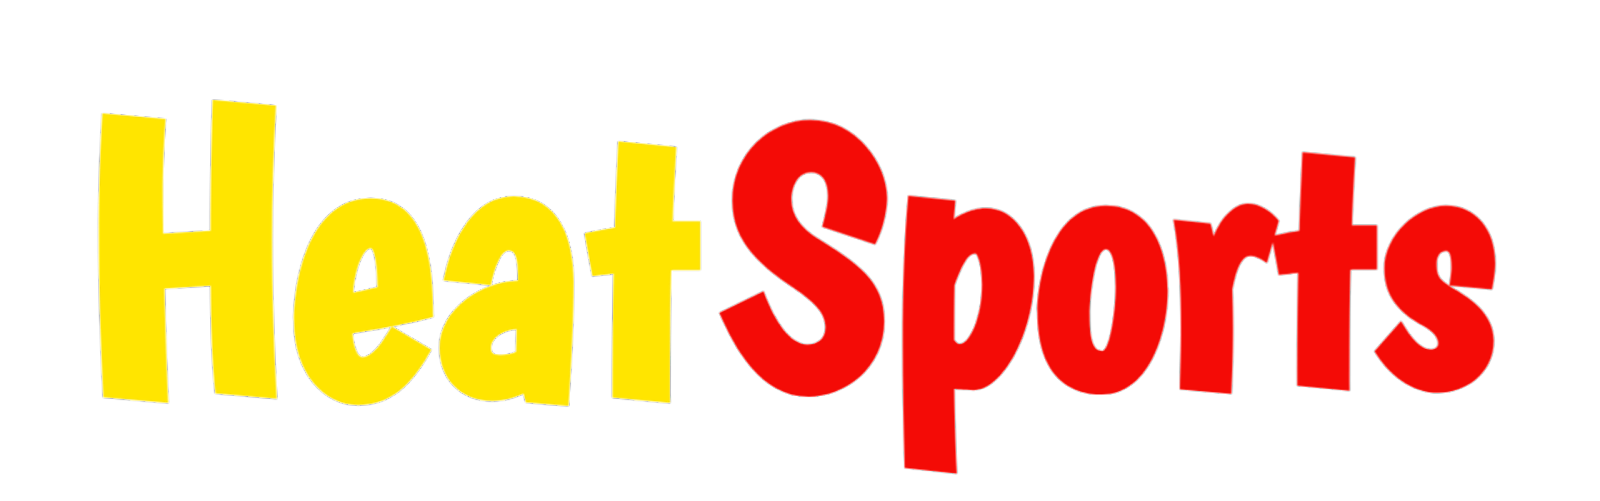 Heat Sports 